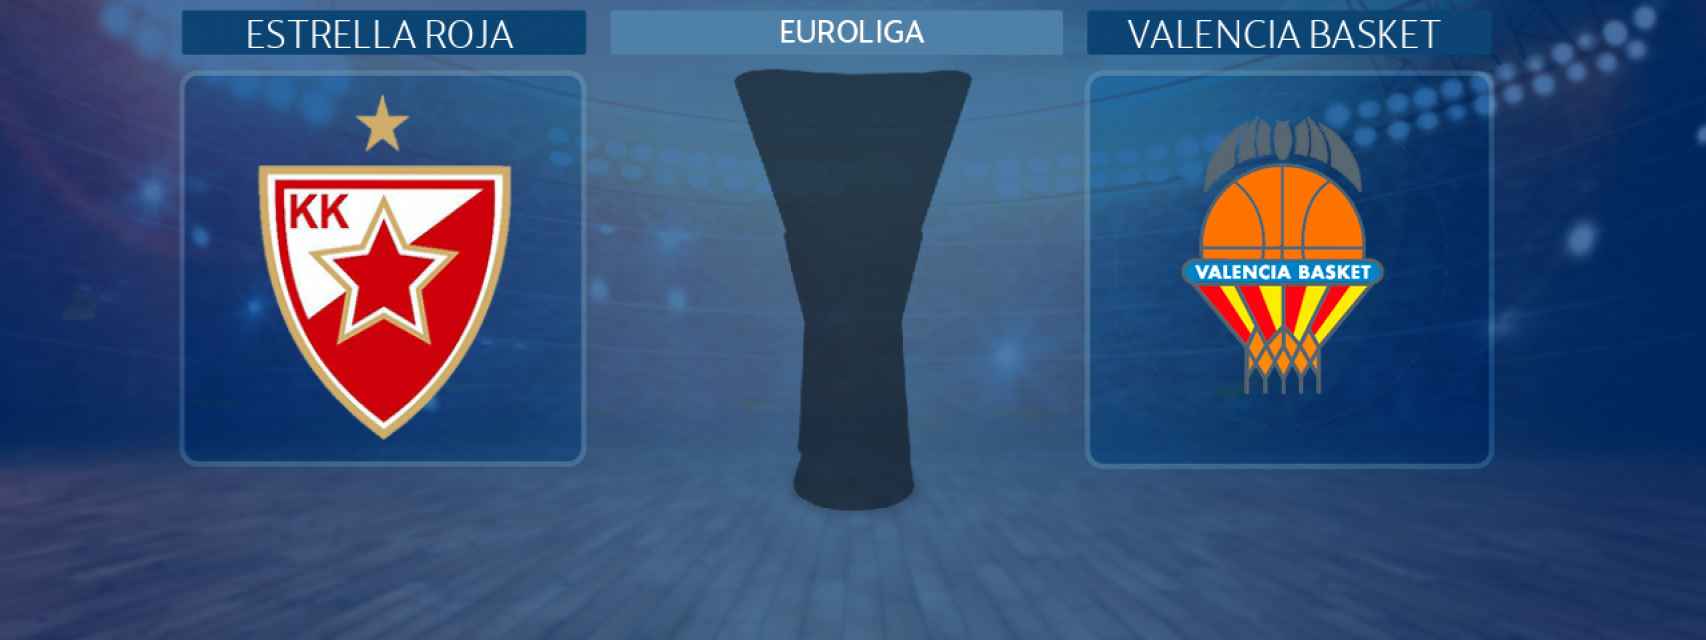 Estrella Roja - Valencia Basket, partido de la Euroliga